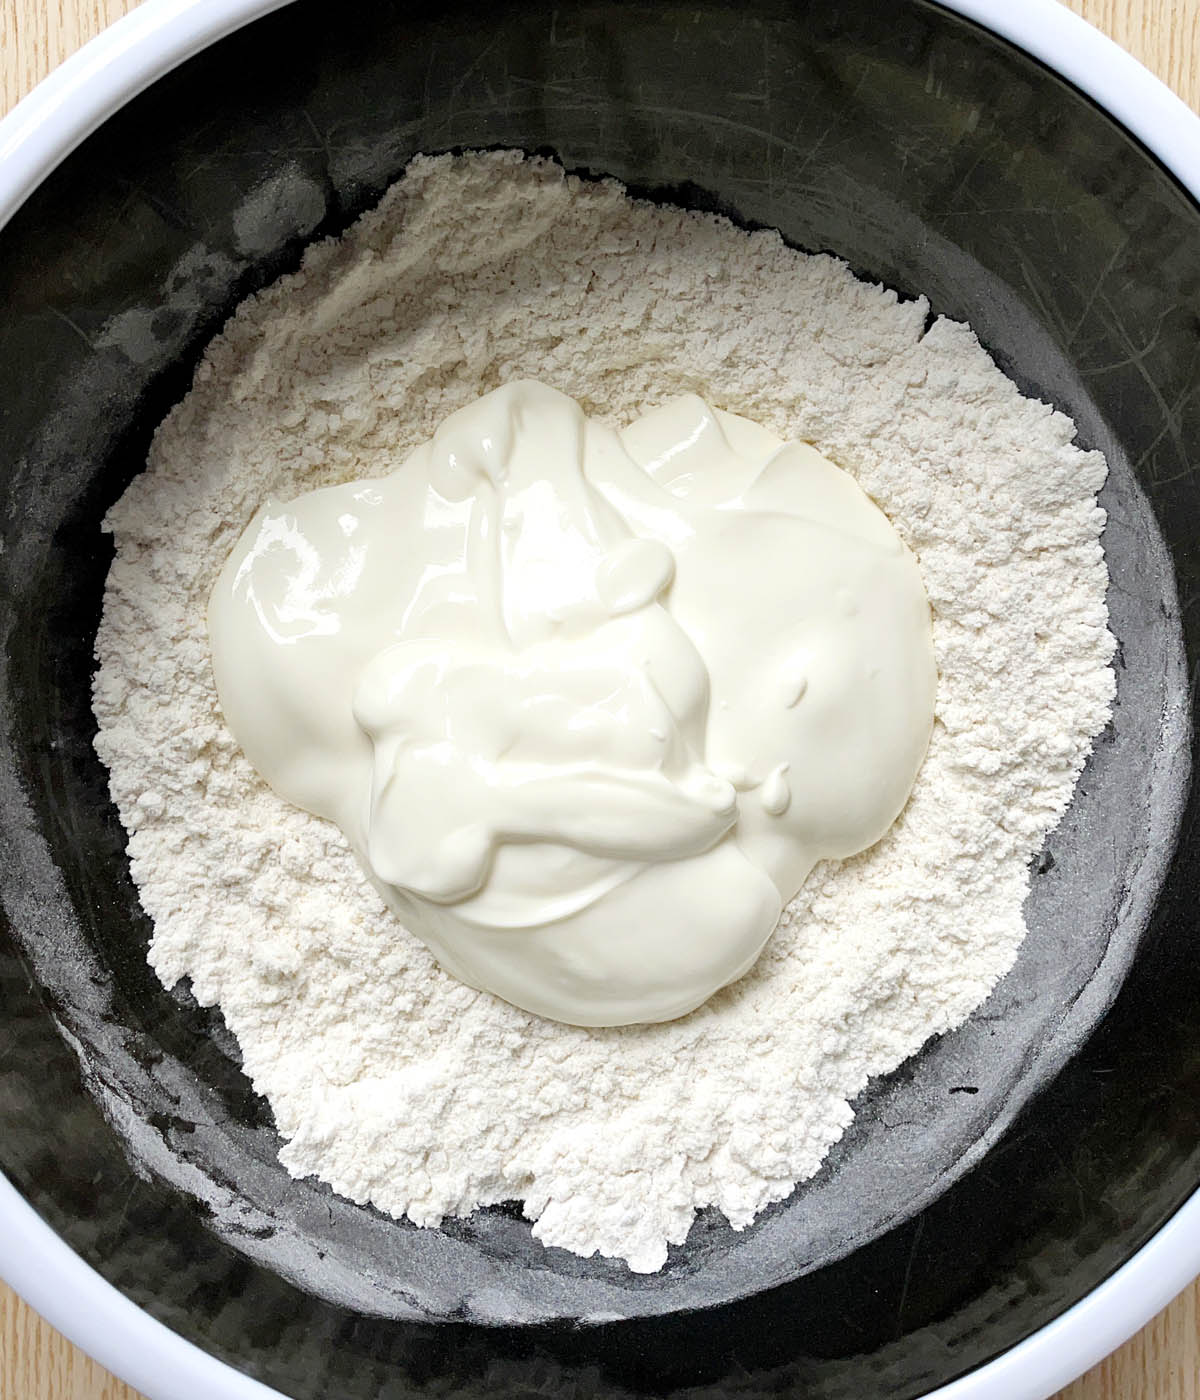 A round black bowl containing white flour and white yogurt.